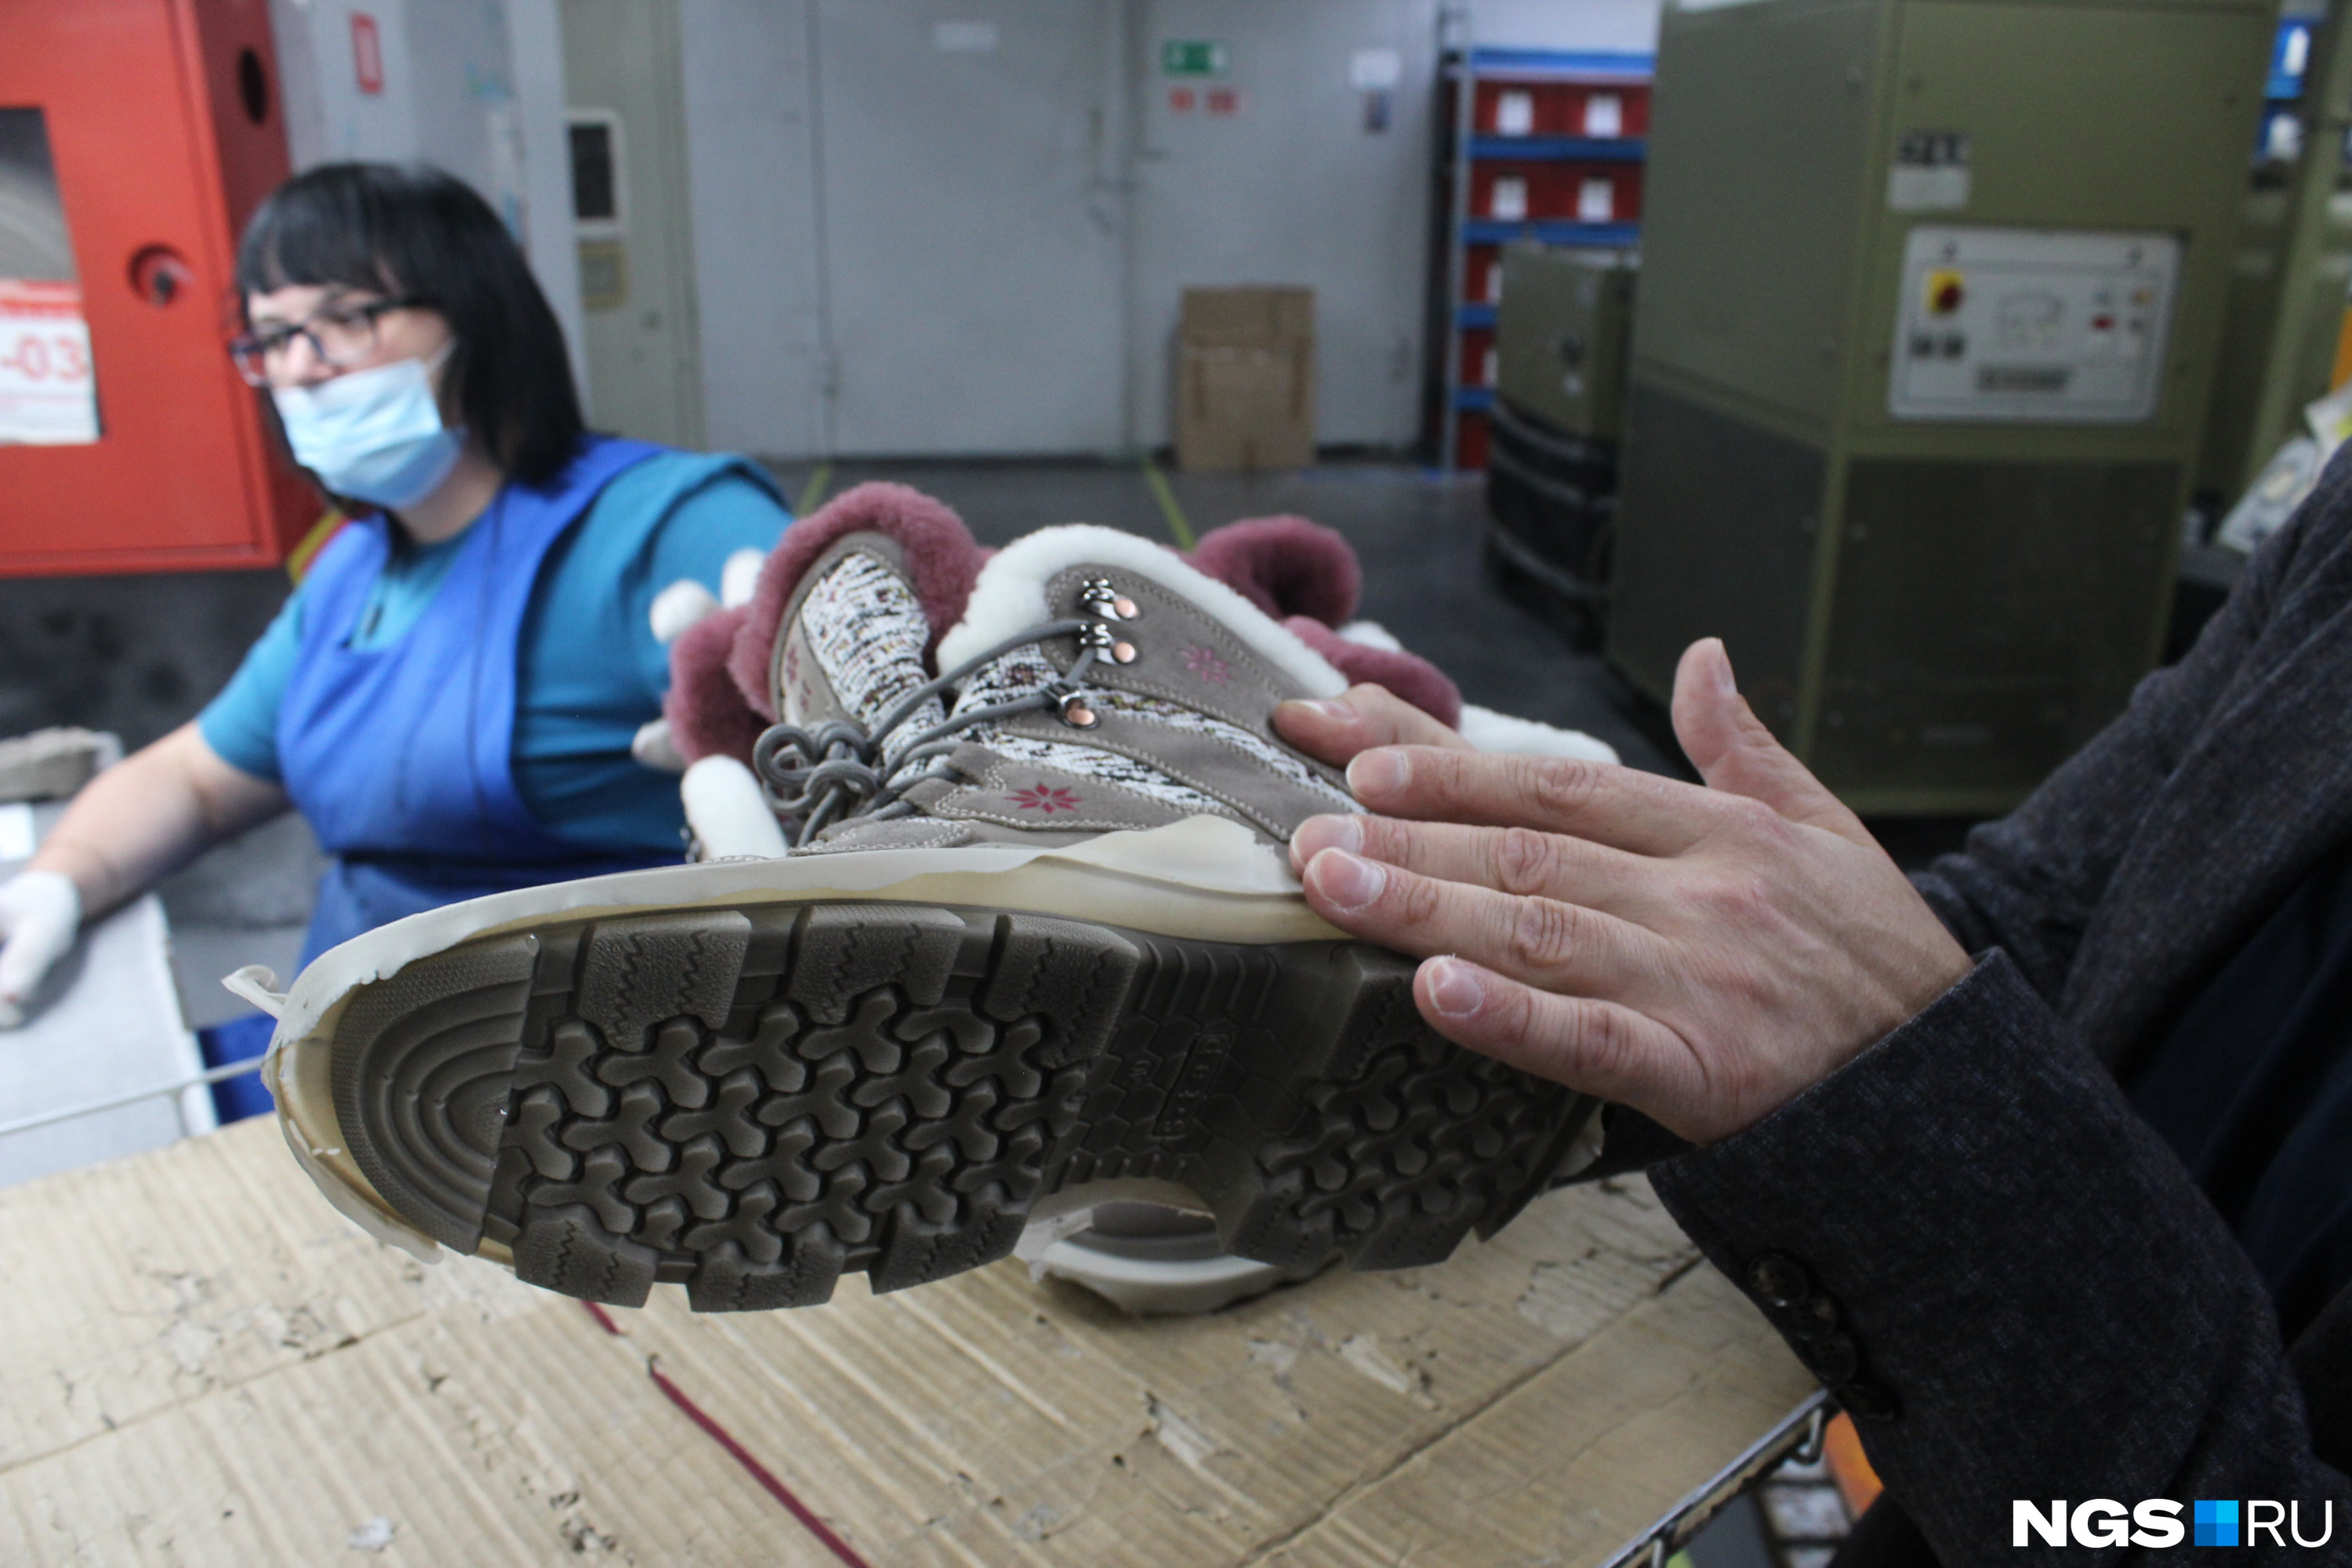 Как делают обувь в России. Производство обуви на фабрике в Бердске, как « Обувь России» делает обувь - 23 октября 2021 - 71.ru